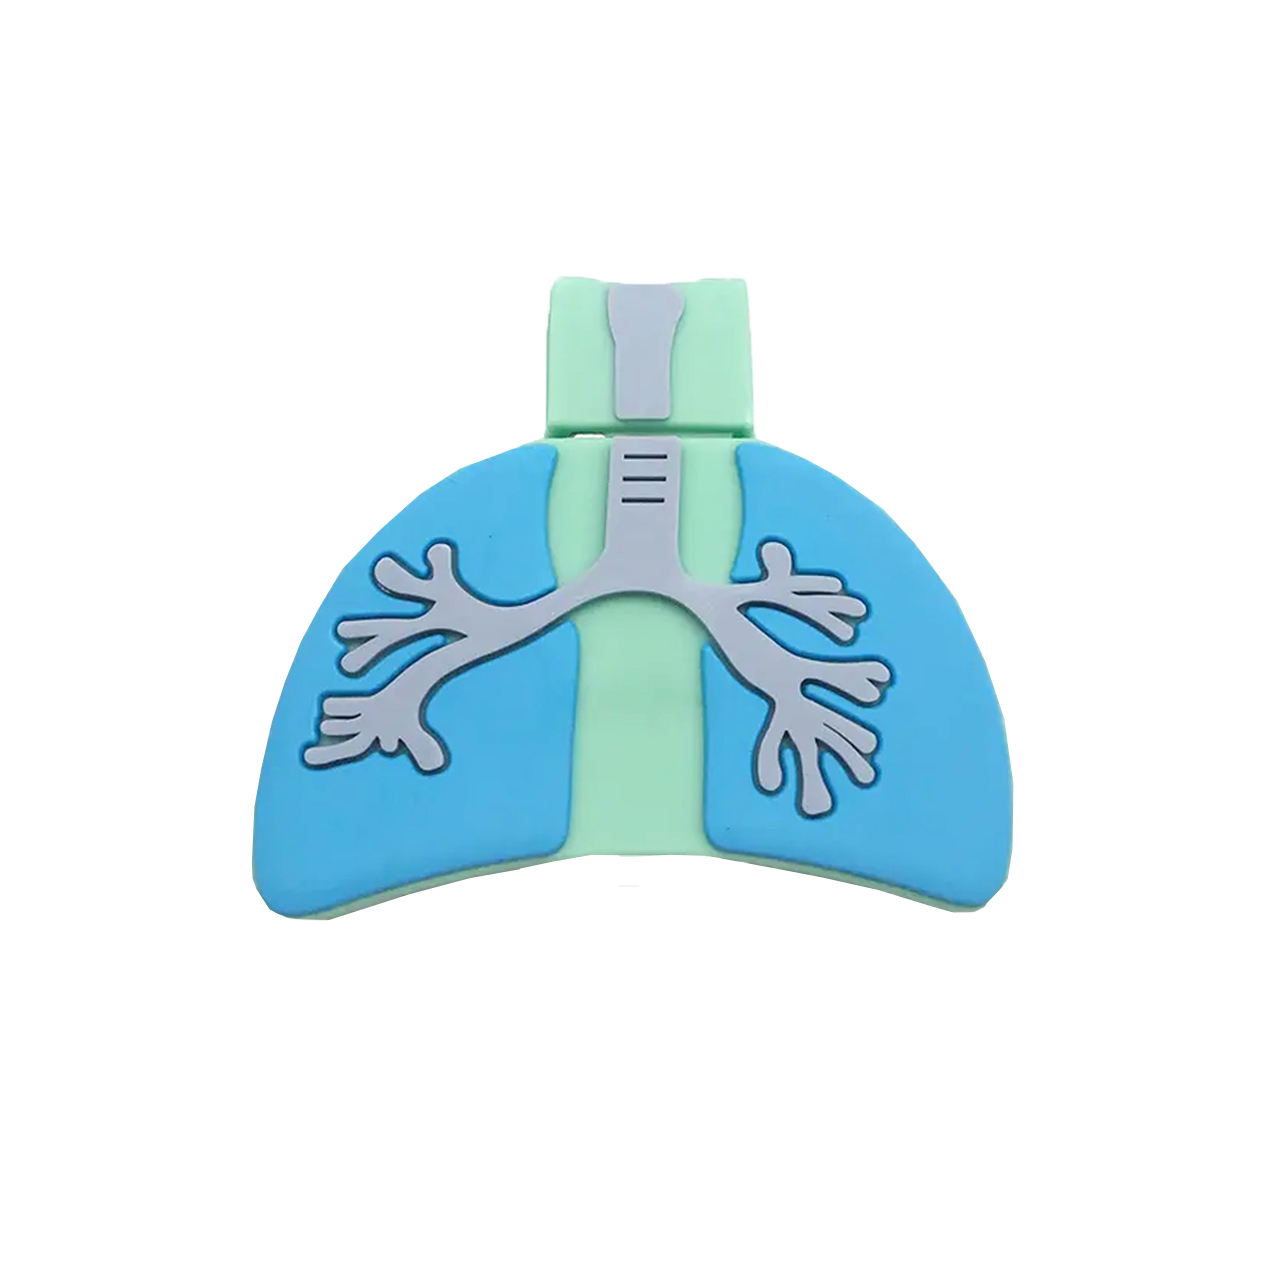 فلش مموری دایا دیتا طرح Lungs مدل PF1101 ظرفیت 16 گیگابایت